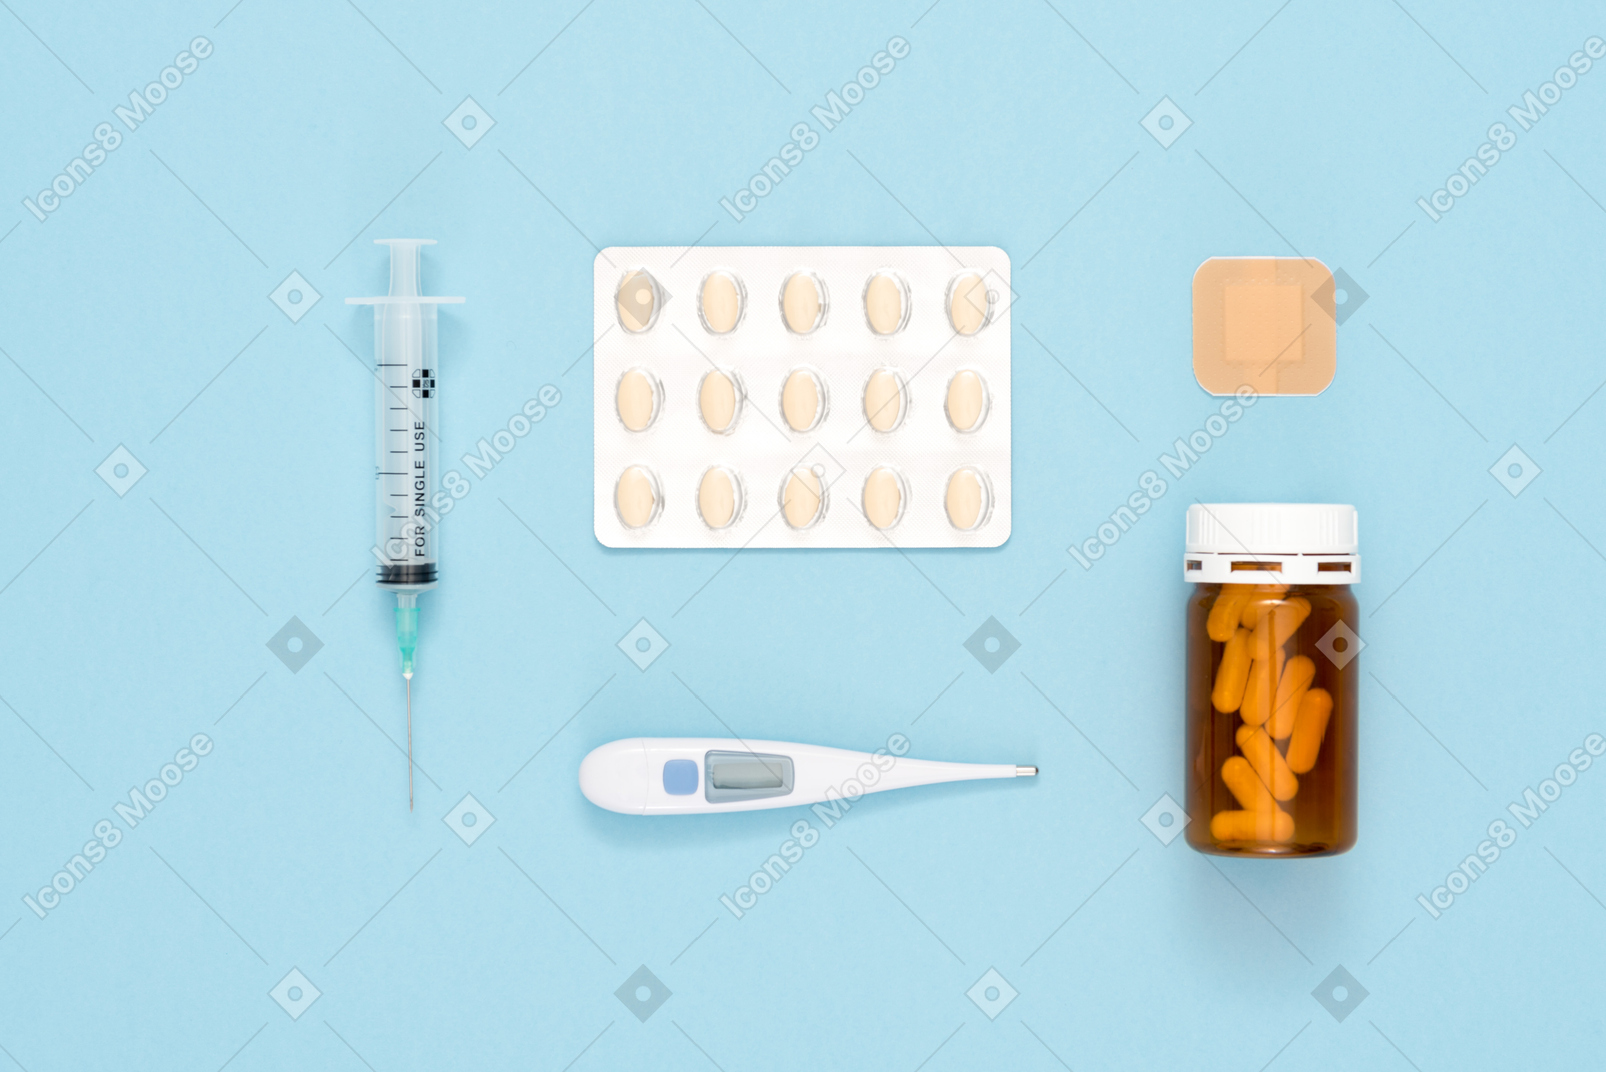 Blister pack of pills